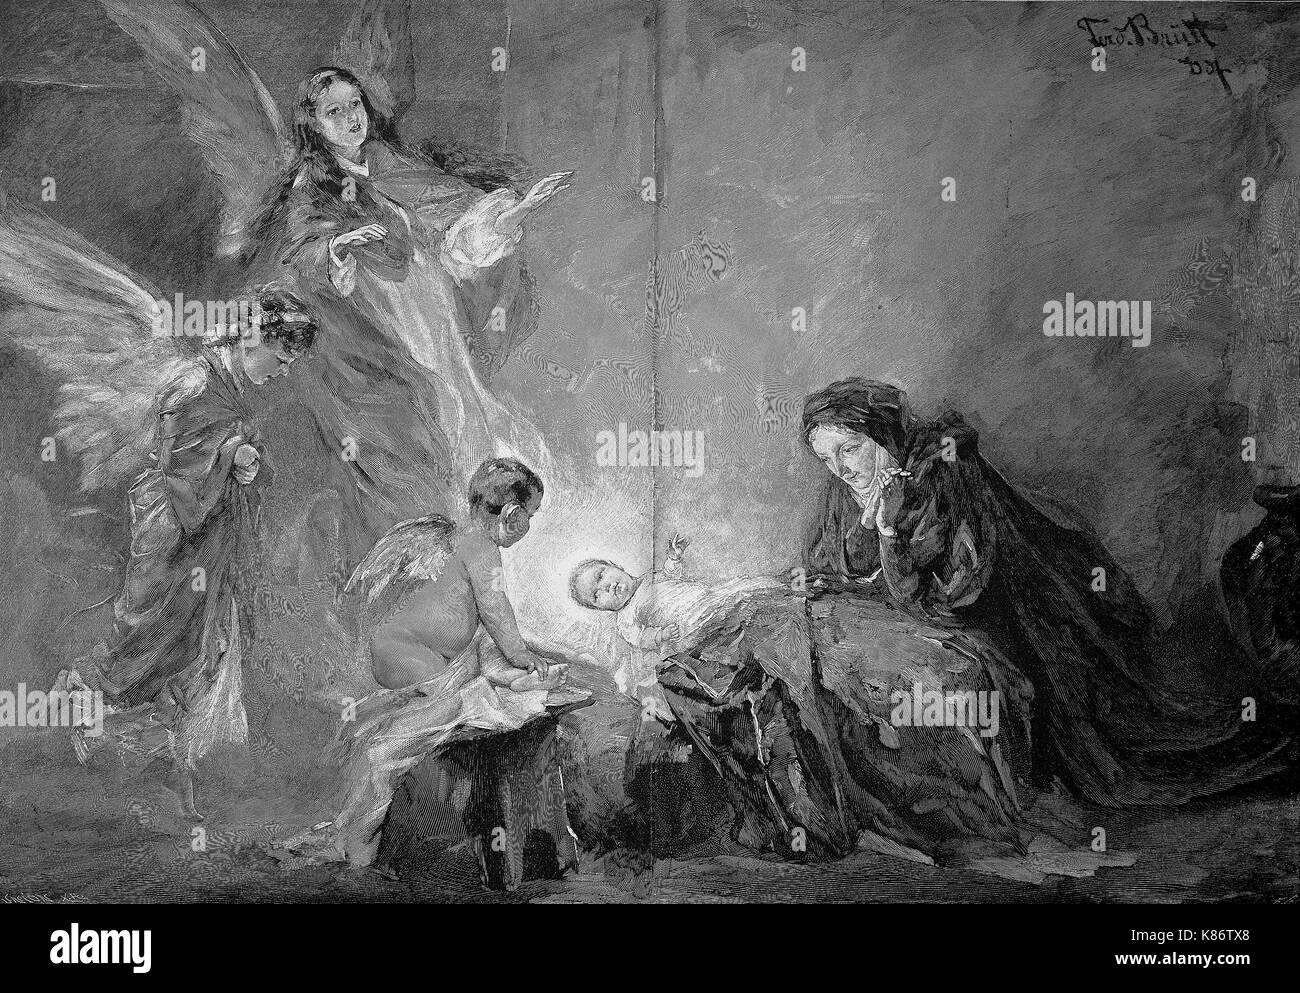 La nuit sainte, la naissance de Jésus, l'enfant est entouré par des anges, l'amélioration numérique woodprint reproduction d'un original du 19ème siècle Banque D'Images